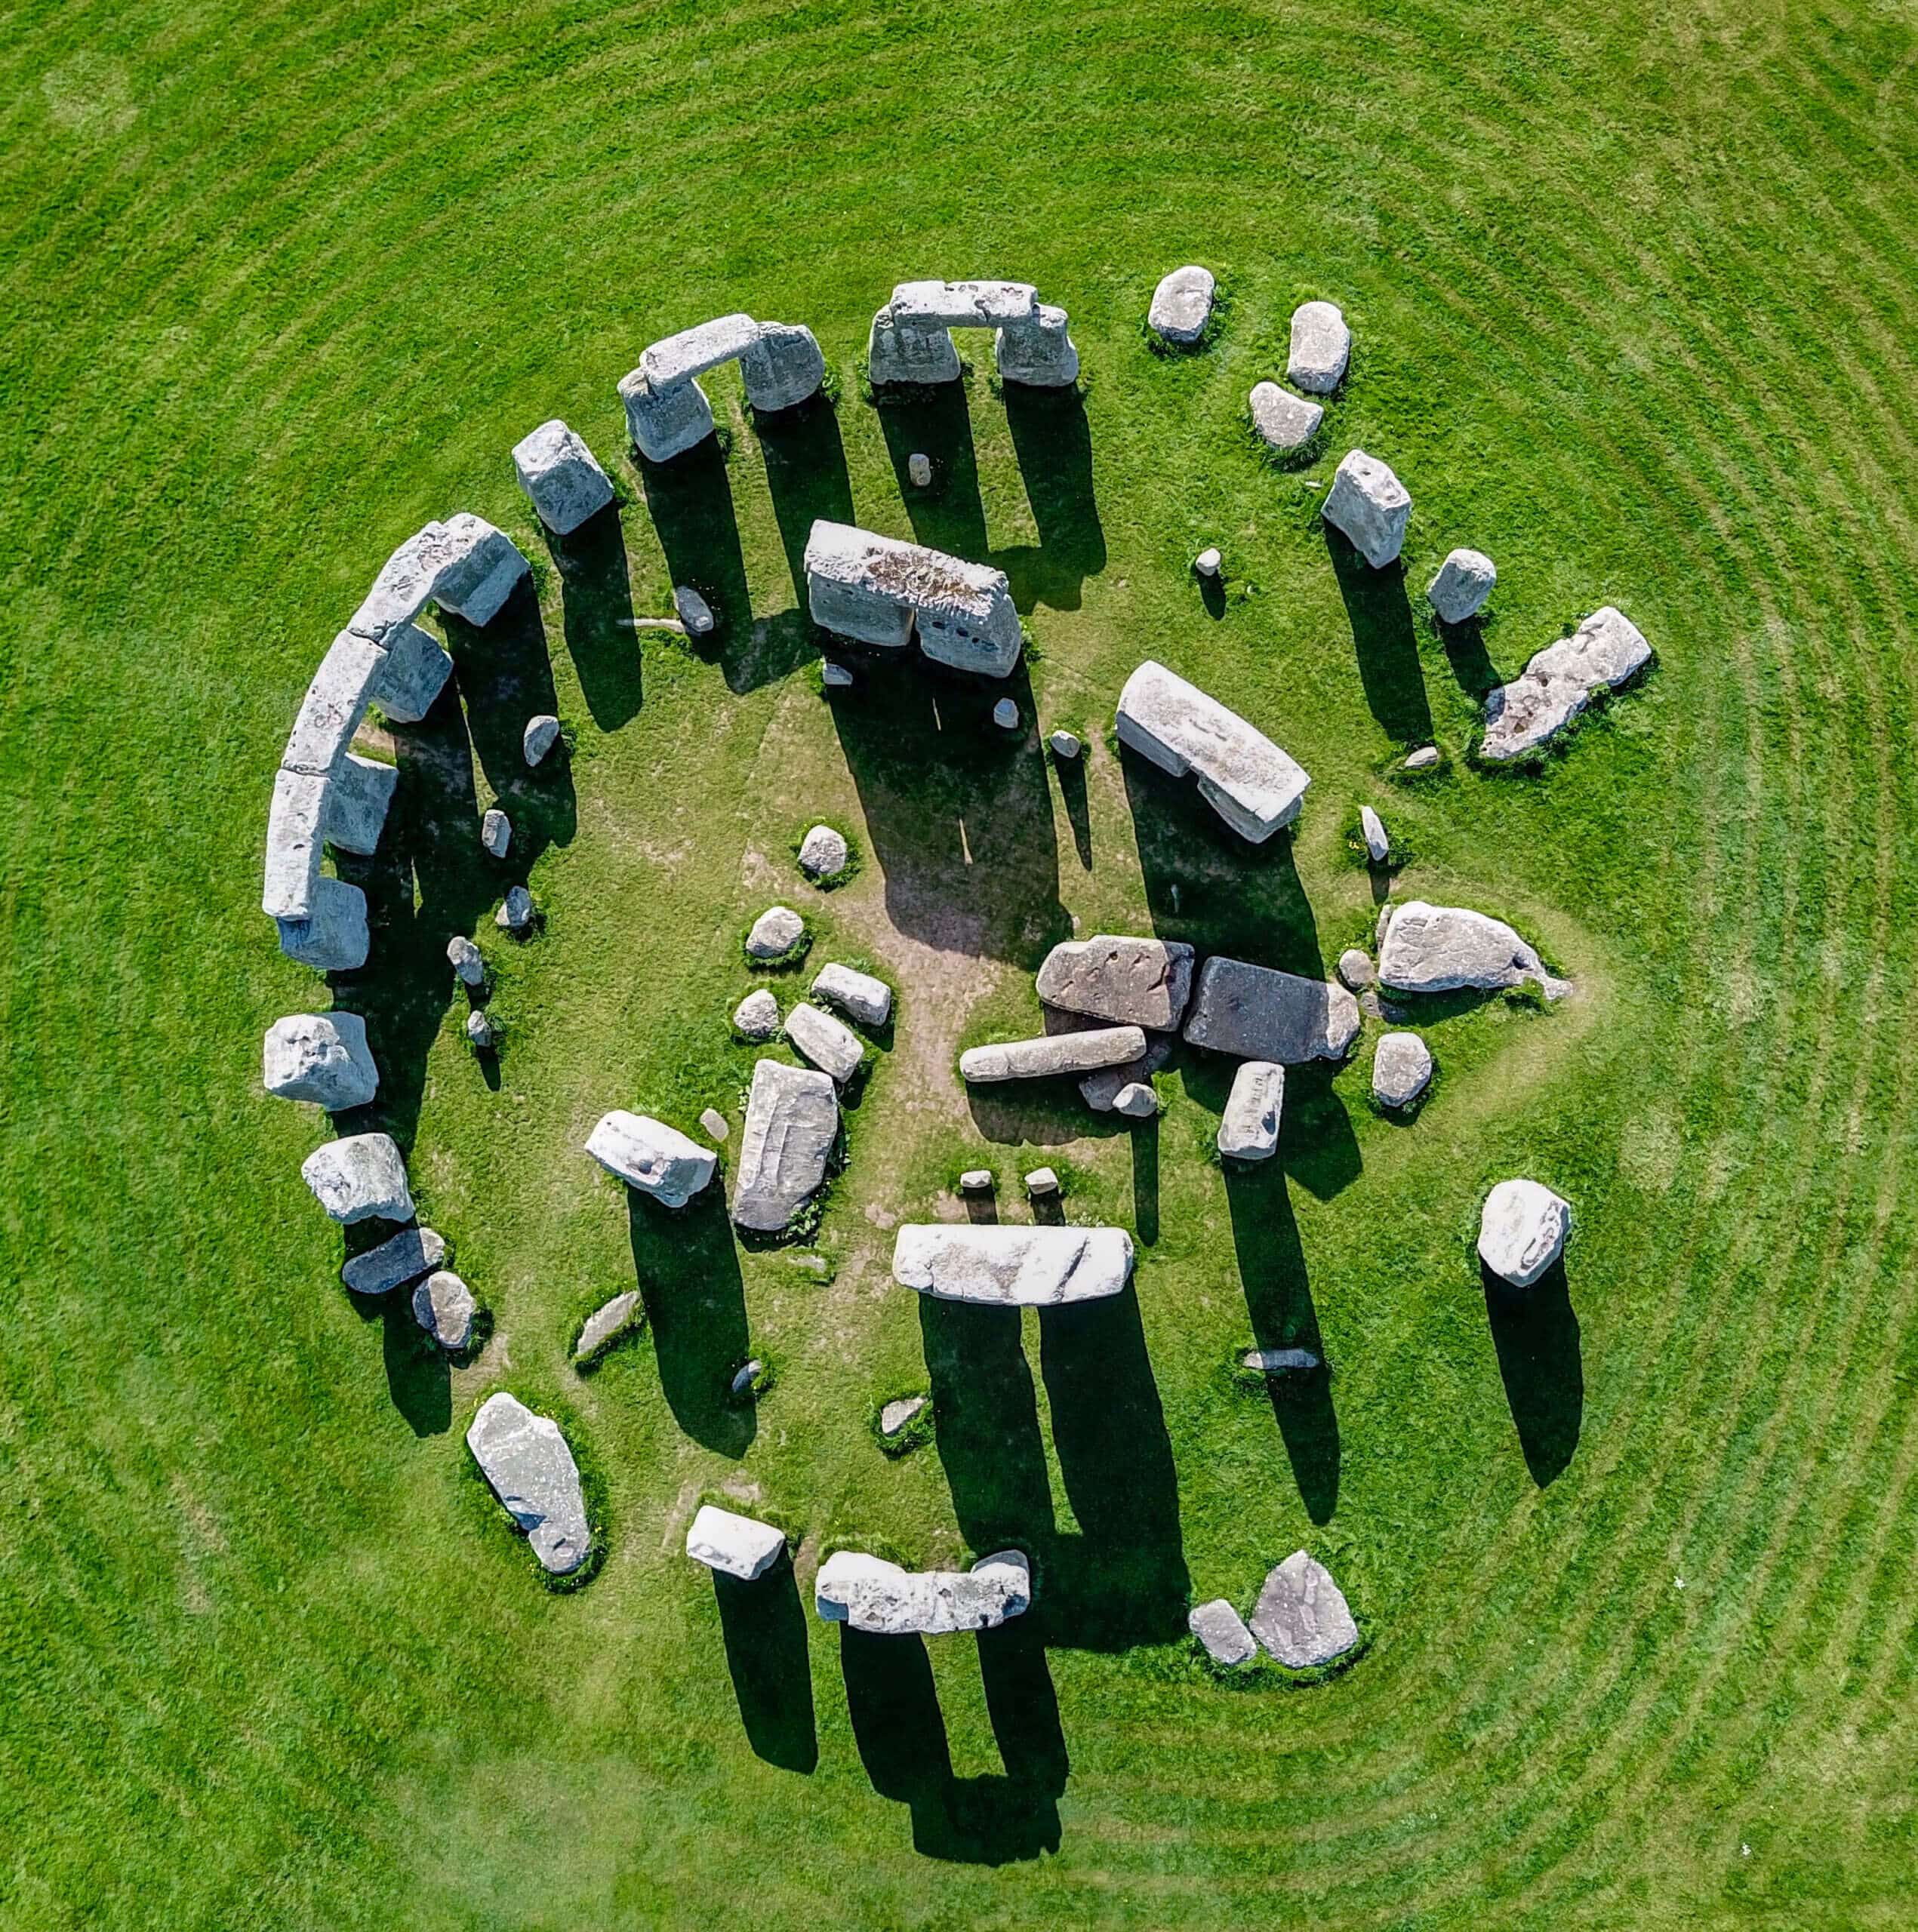 הסטונהנג'  - מעגל האבנים בבריטניה, ששימש כלוח שנה. צילום: shutterstock